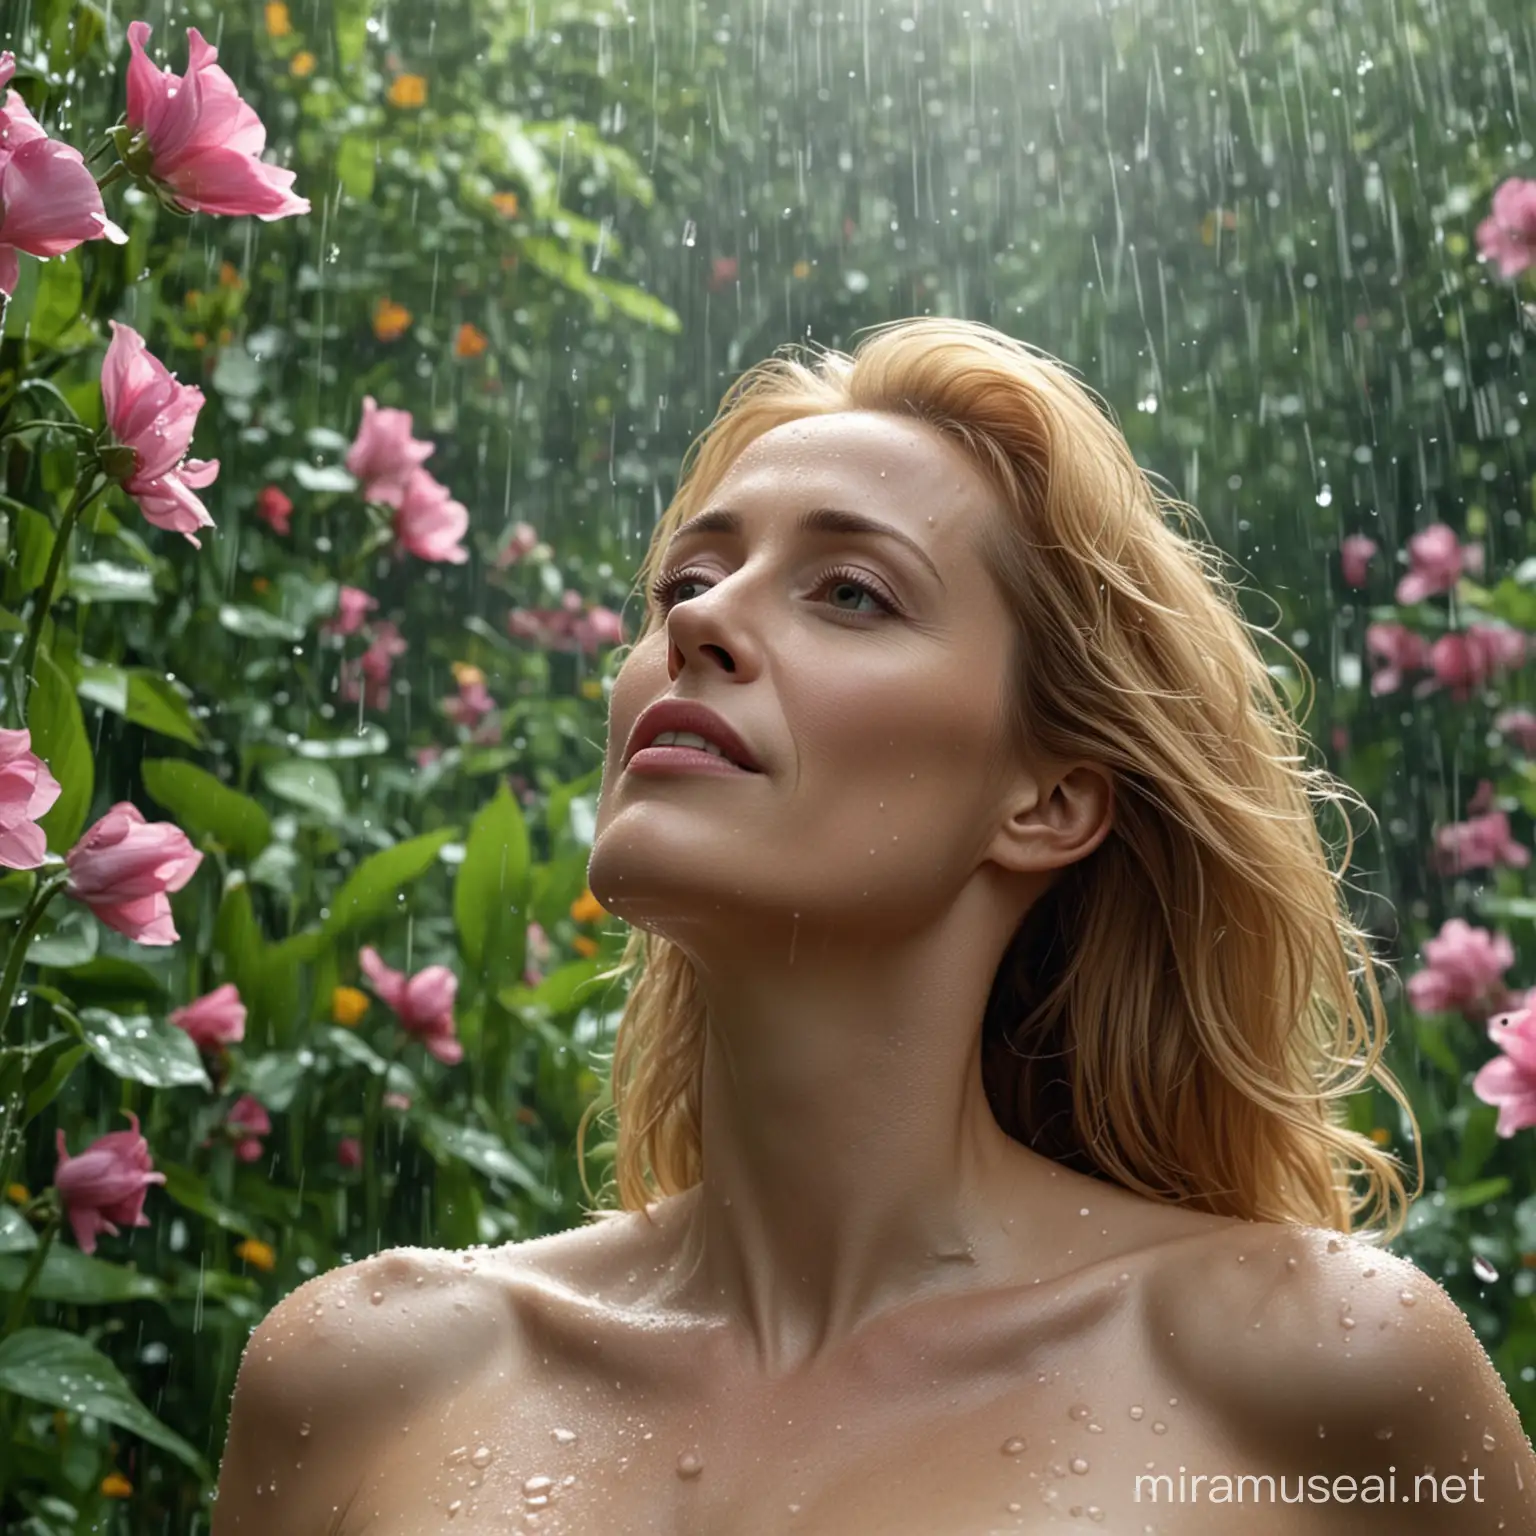 Une superbe image 4K ultra haute définition de Gillian Anderson nue debout dans un jardin fleuri luxuriant. Les yeux fermés, elle lève le visage vers le ciel, laissant la pluie tomber doucement sur son visage et son corps. Les gouttes de pluie créent un effet chatoyant sur sa peau et ses cheveux flottent au vent. L’arrière-plan présente une vaste gamme de fleurs et de verdure vibrantes et réalistes. Les détails 3D et la résolution 8K UHD créent une expérience cinématographique immersive, capturant l'essence d'un moment serein et magique.